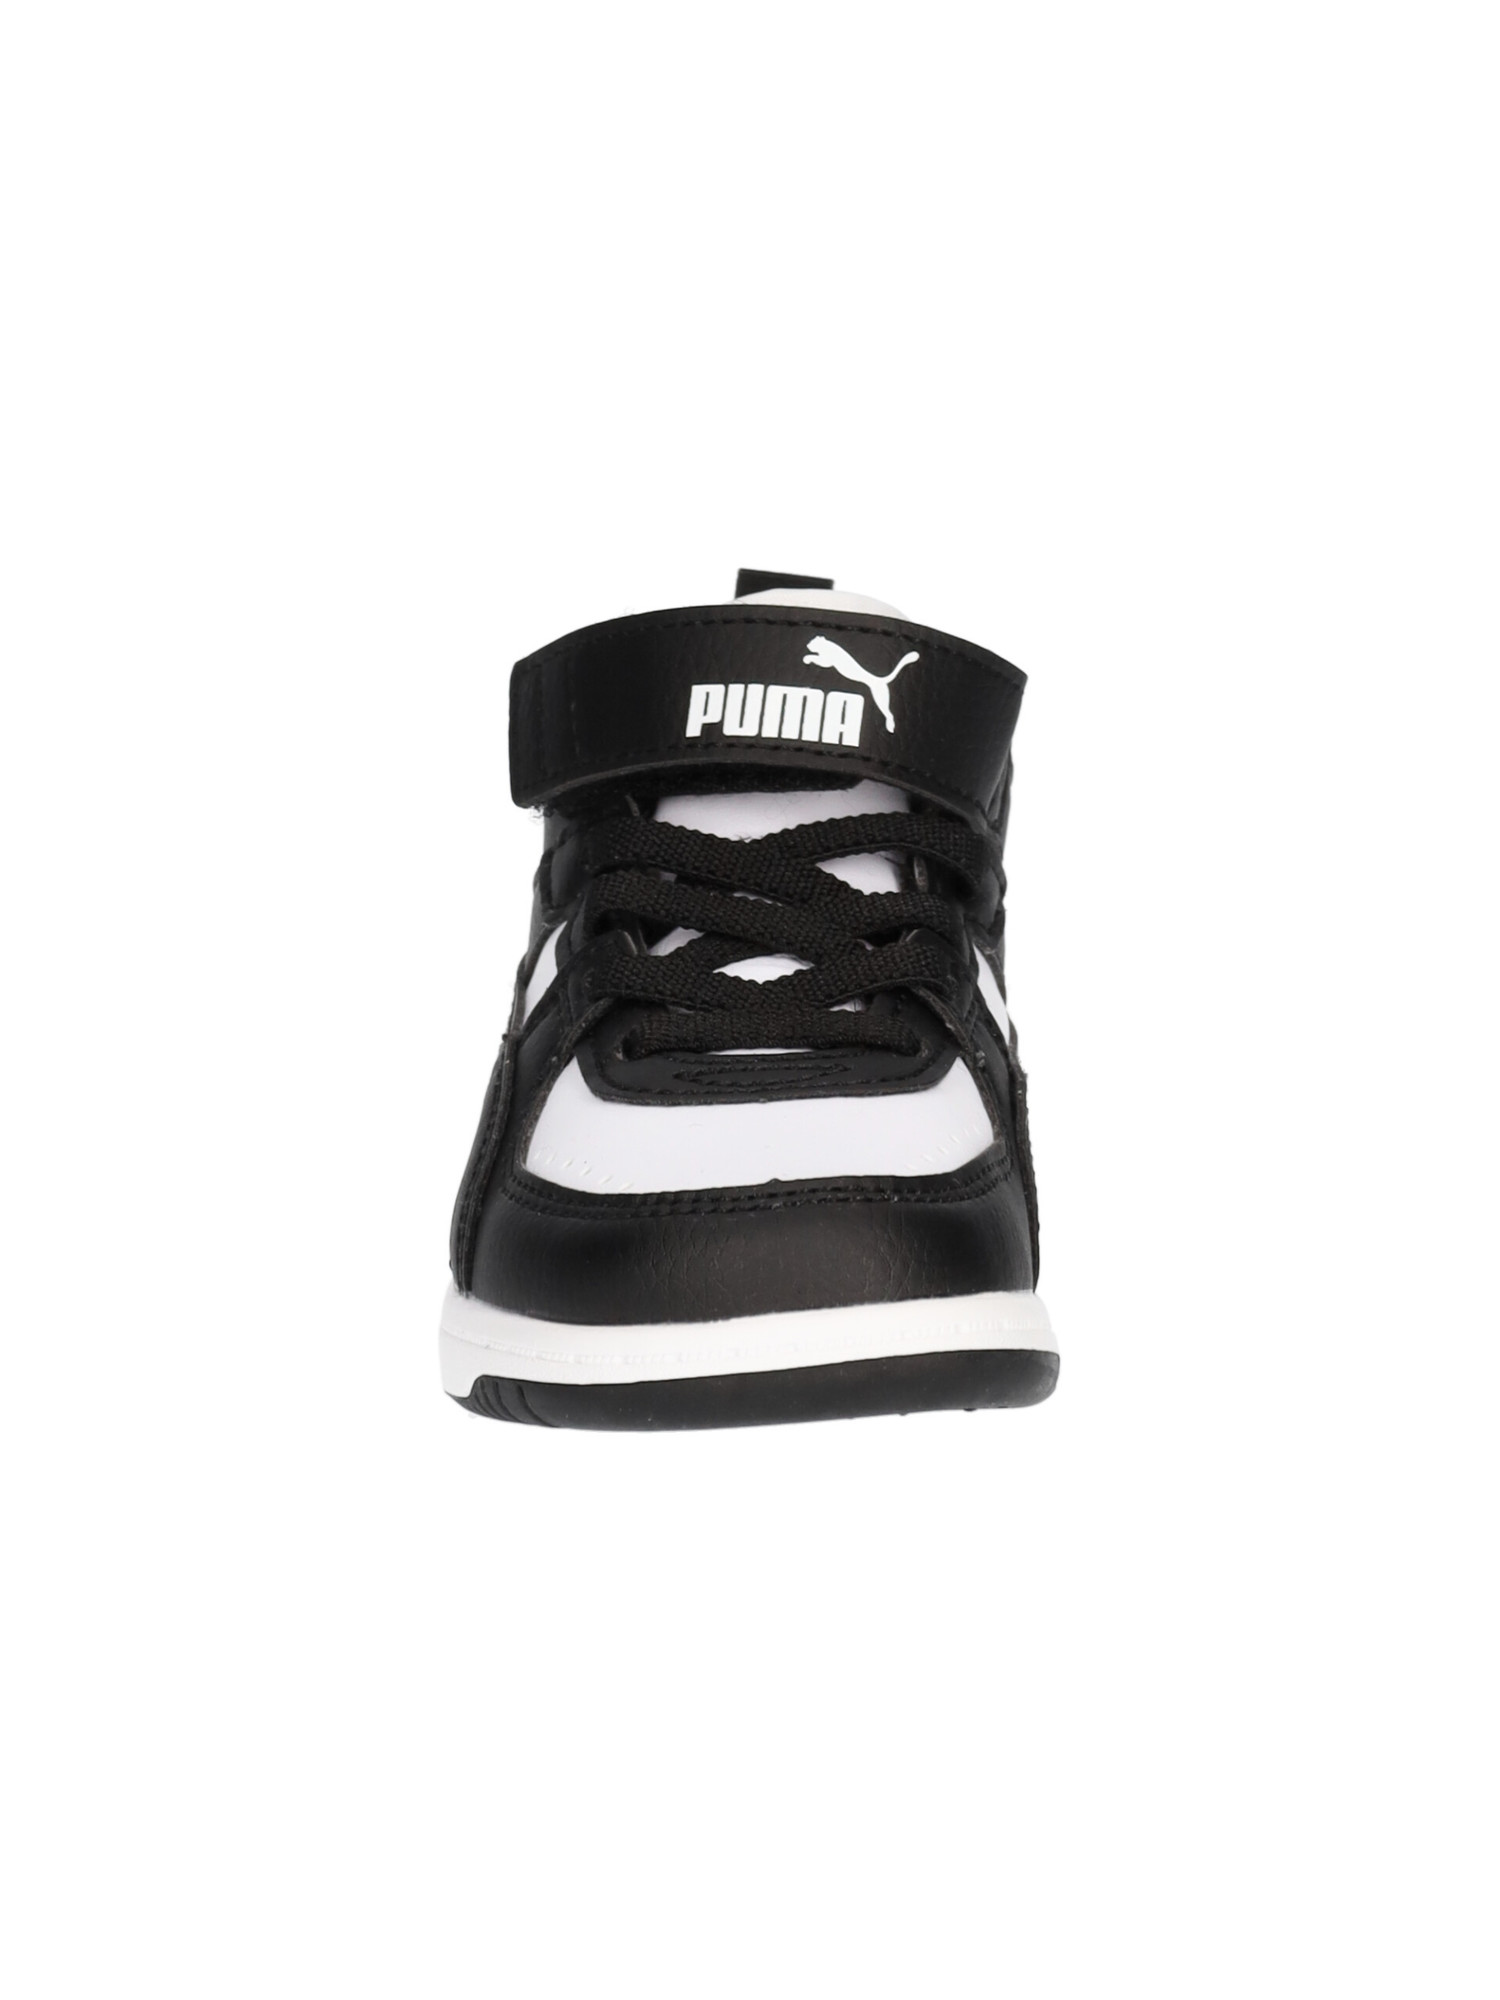 sneaker-puma-rebound-primi-passi-bambino-nera